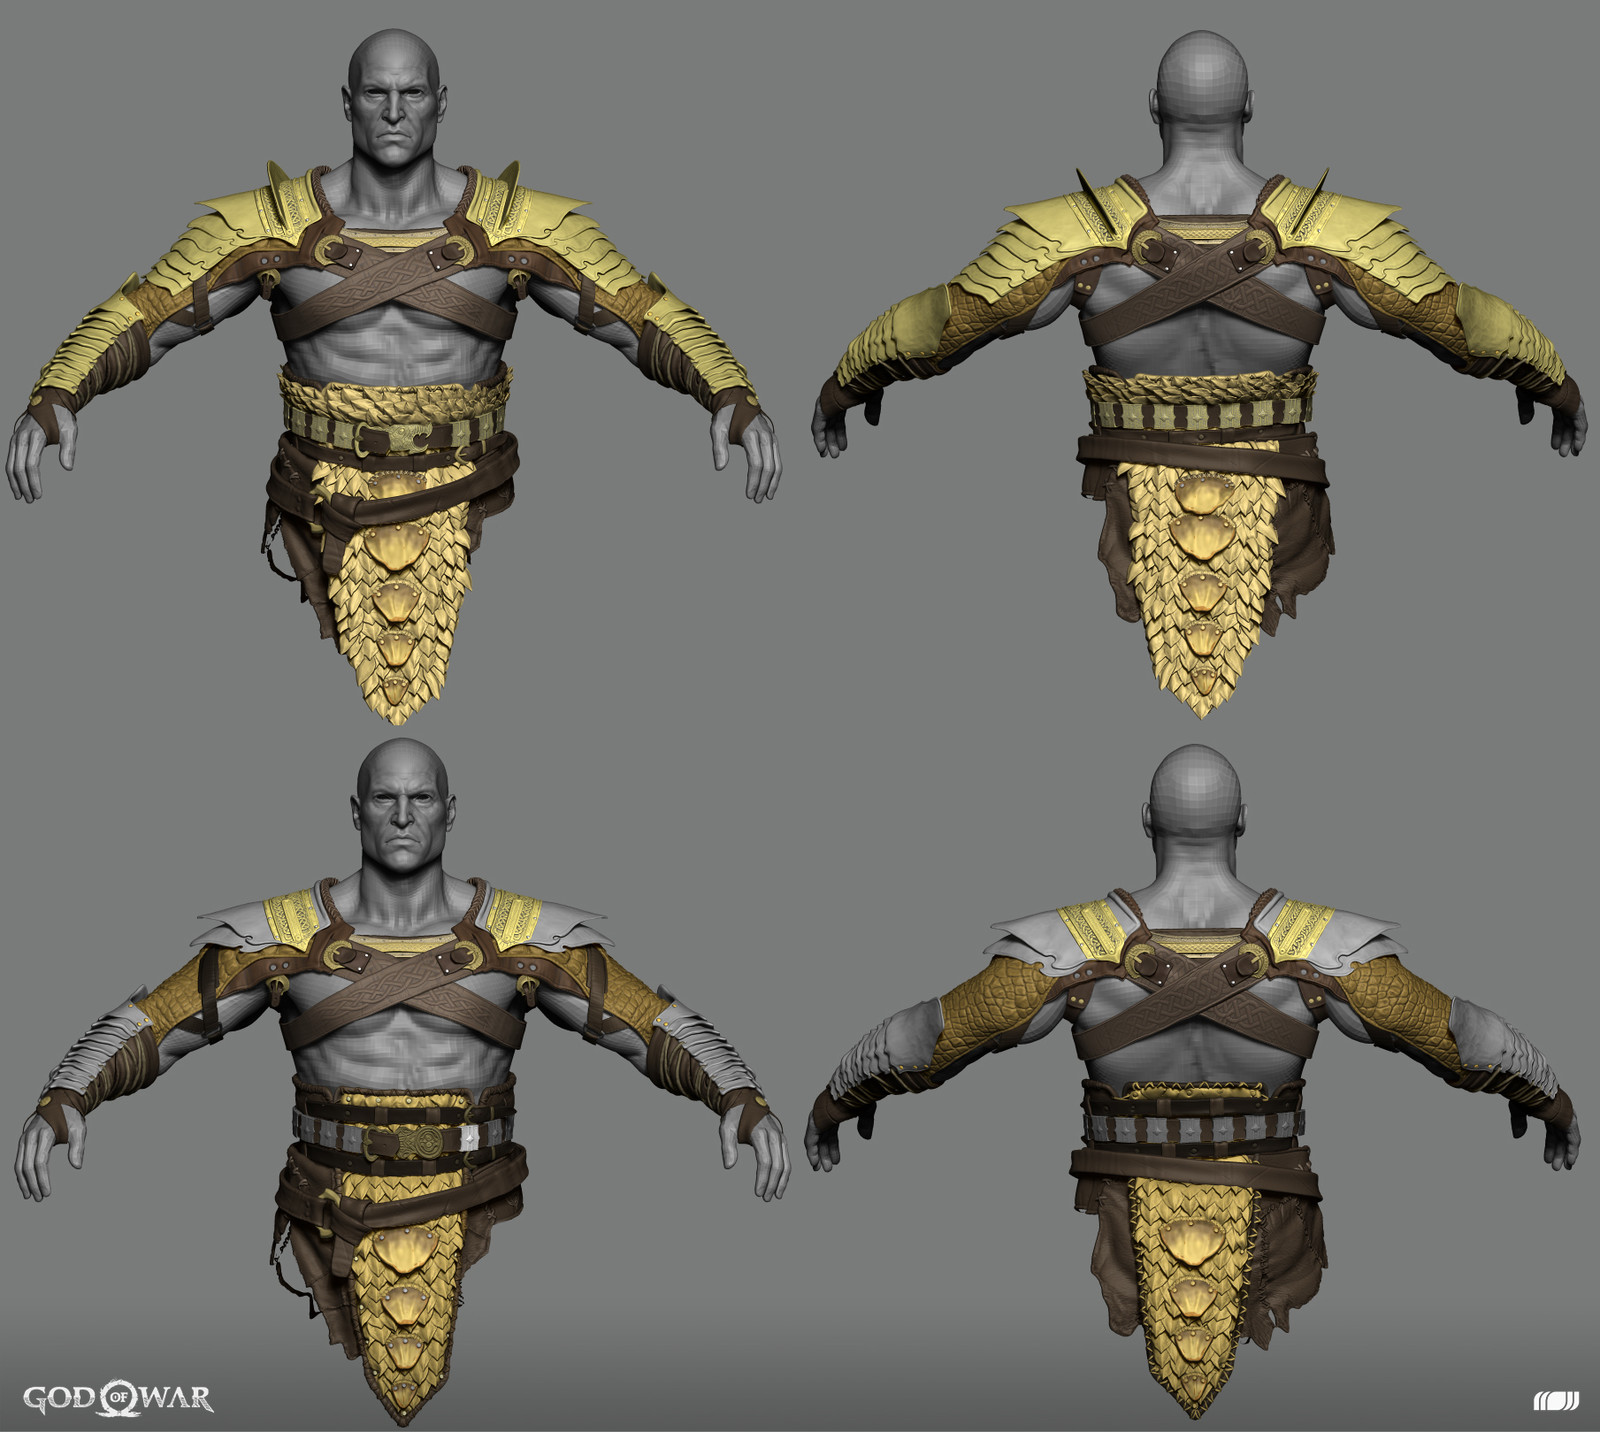 Kratos armor upgrades
Concept by Jose Cabrera